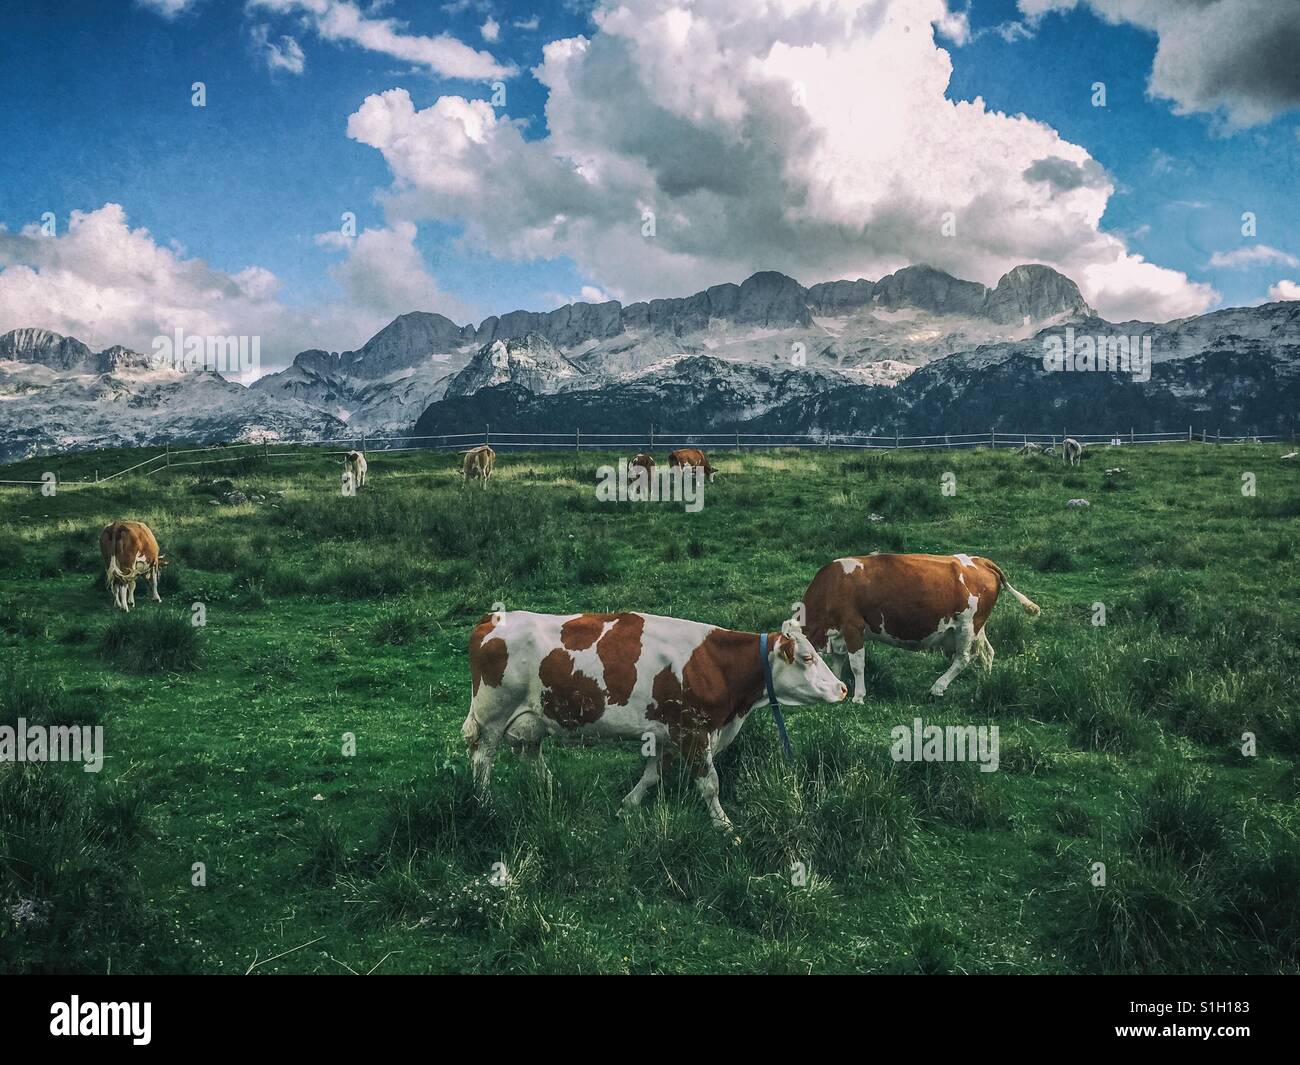 Vaches dans un pré avec des montagnes en arrière-plan (Montasio plateau, Alpes Juliennes, Italie) Banque D'Images